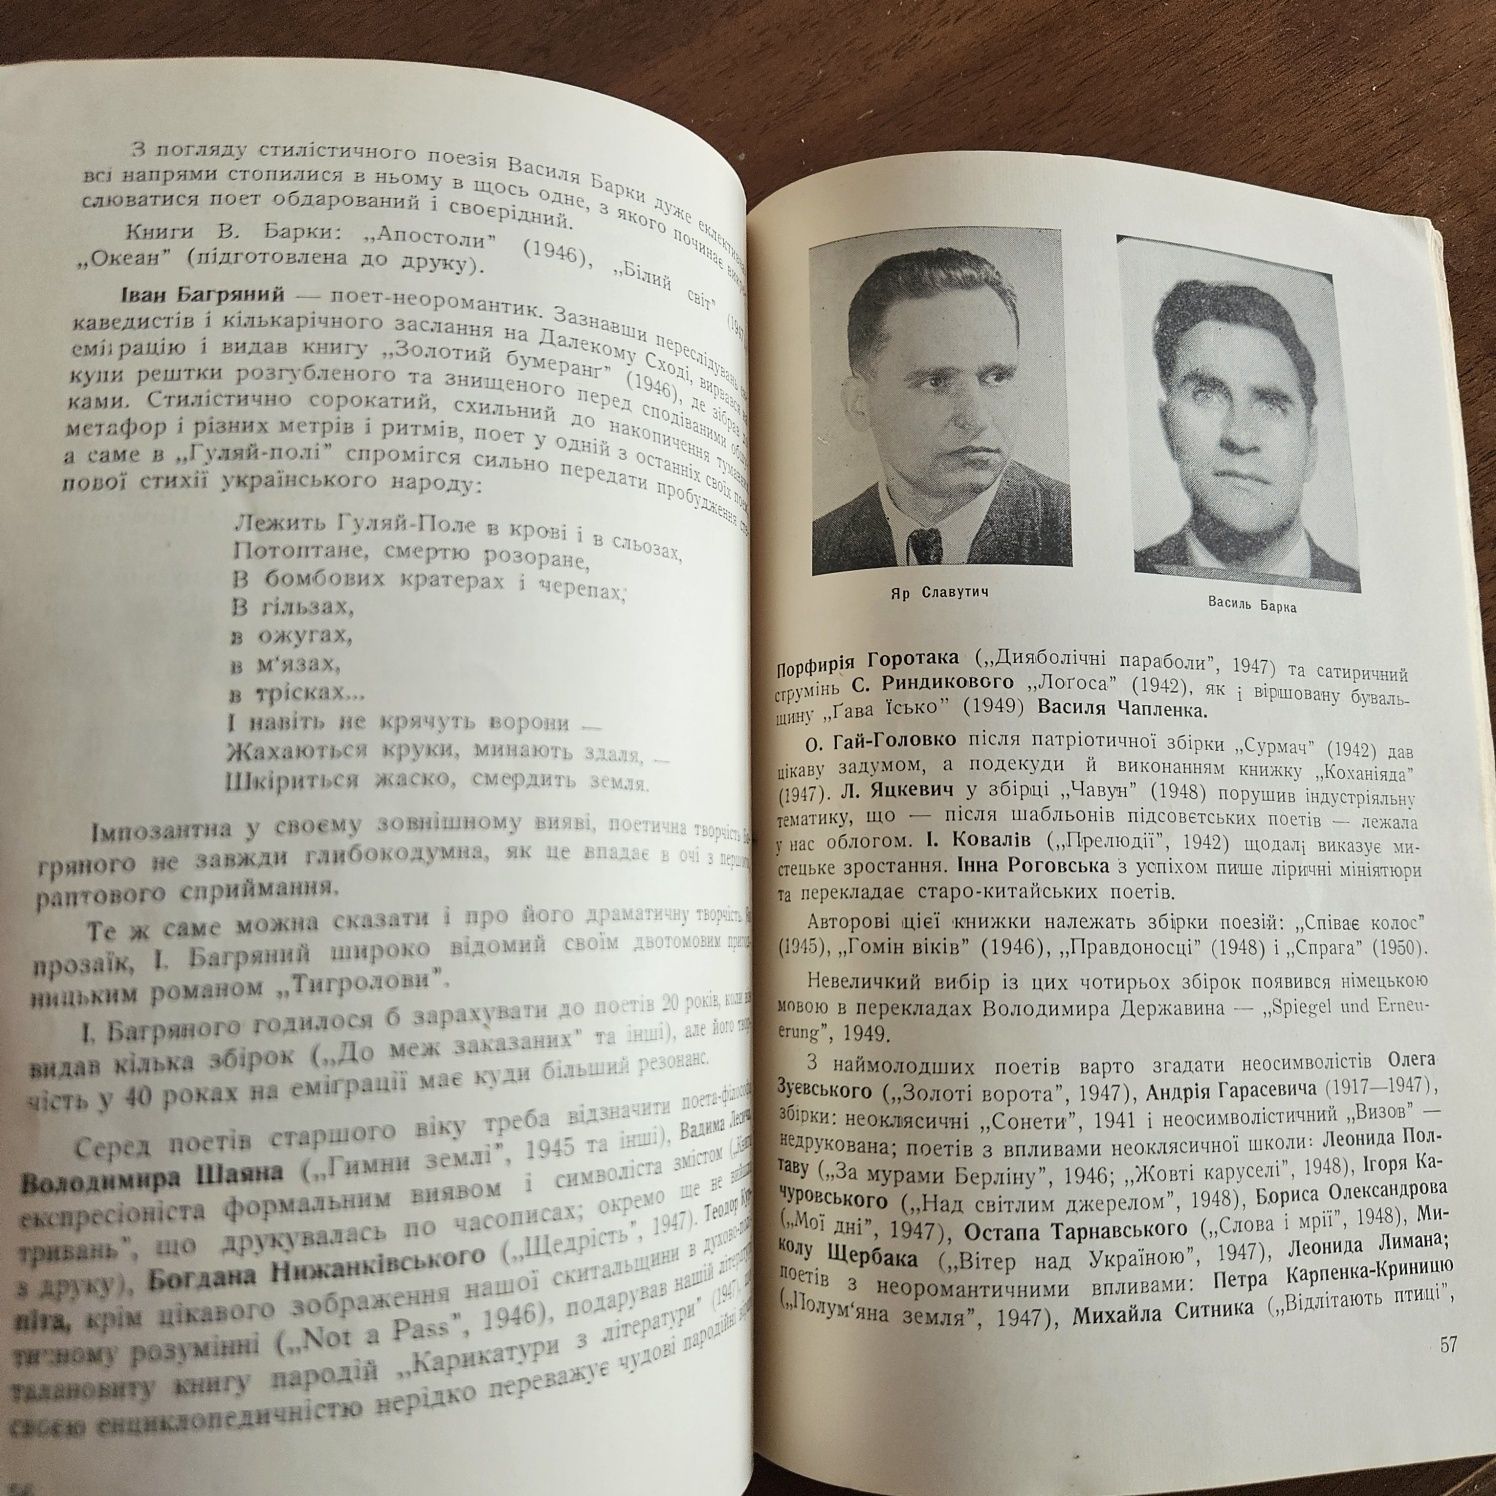 "Модерна українська поезія" Я.Славутича, 1950р.